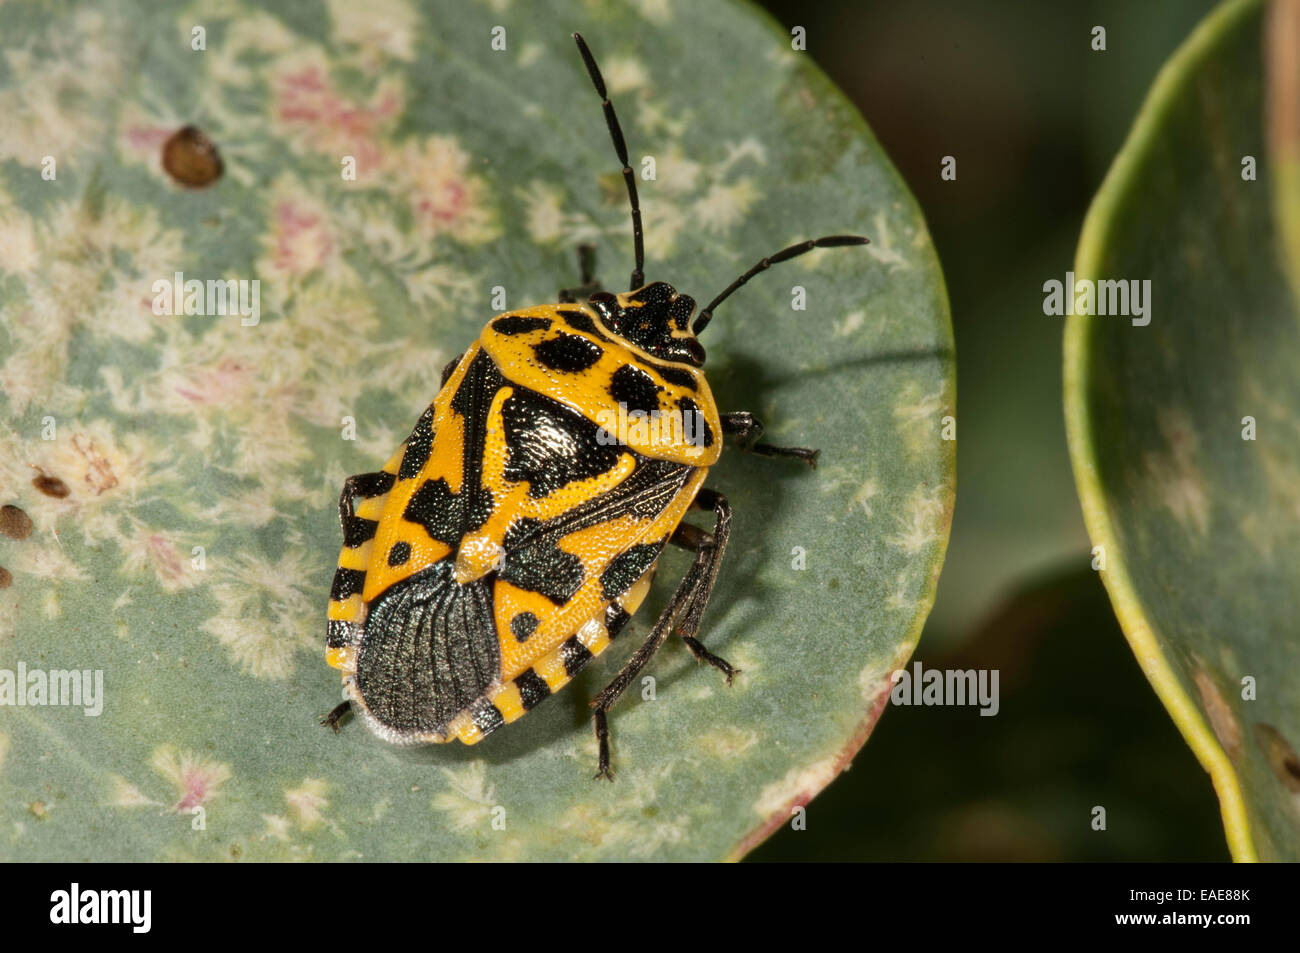 Rot Kohl Bug (Eurydema Ornata), gelbe Farbvariante auf dem Blatt eines Kapern-Strauches, Rhodos, Griechenland Stockfoto